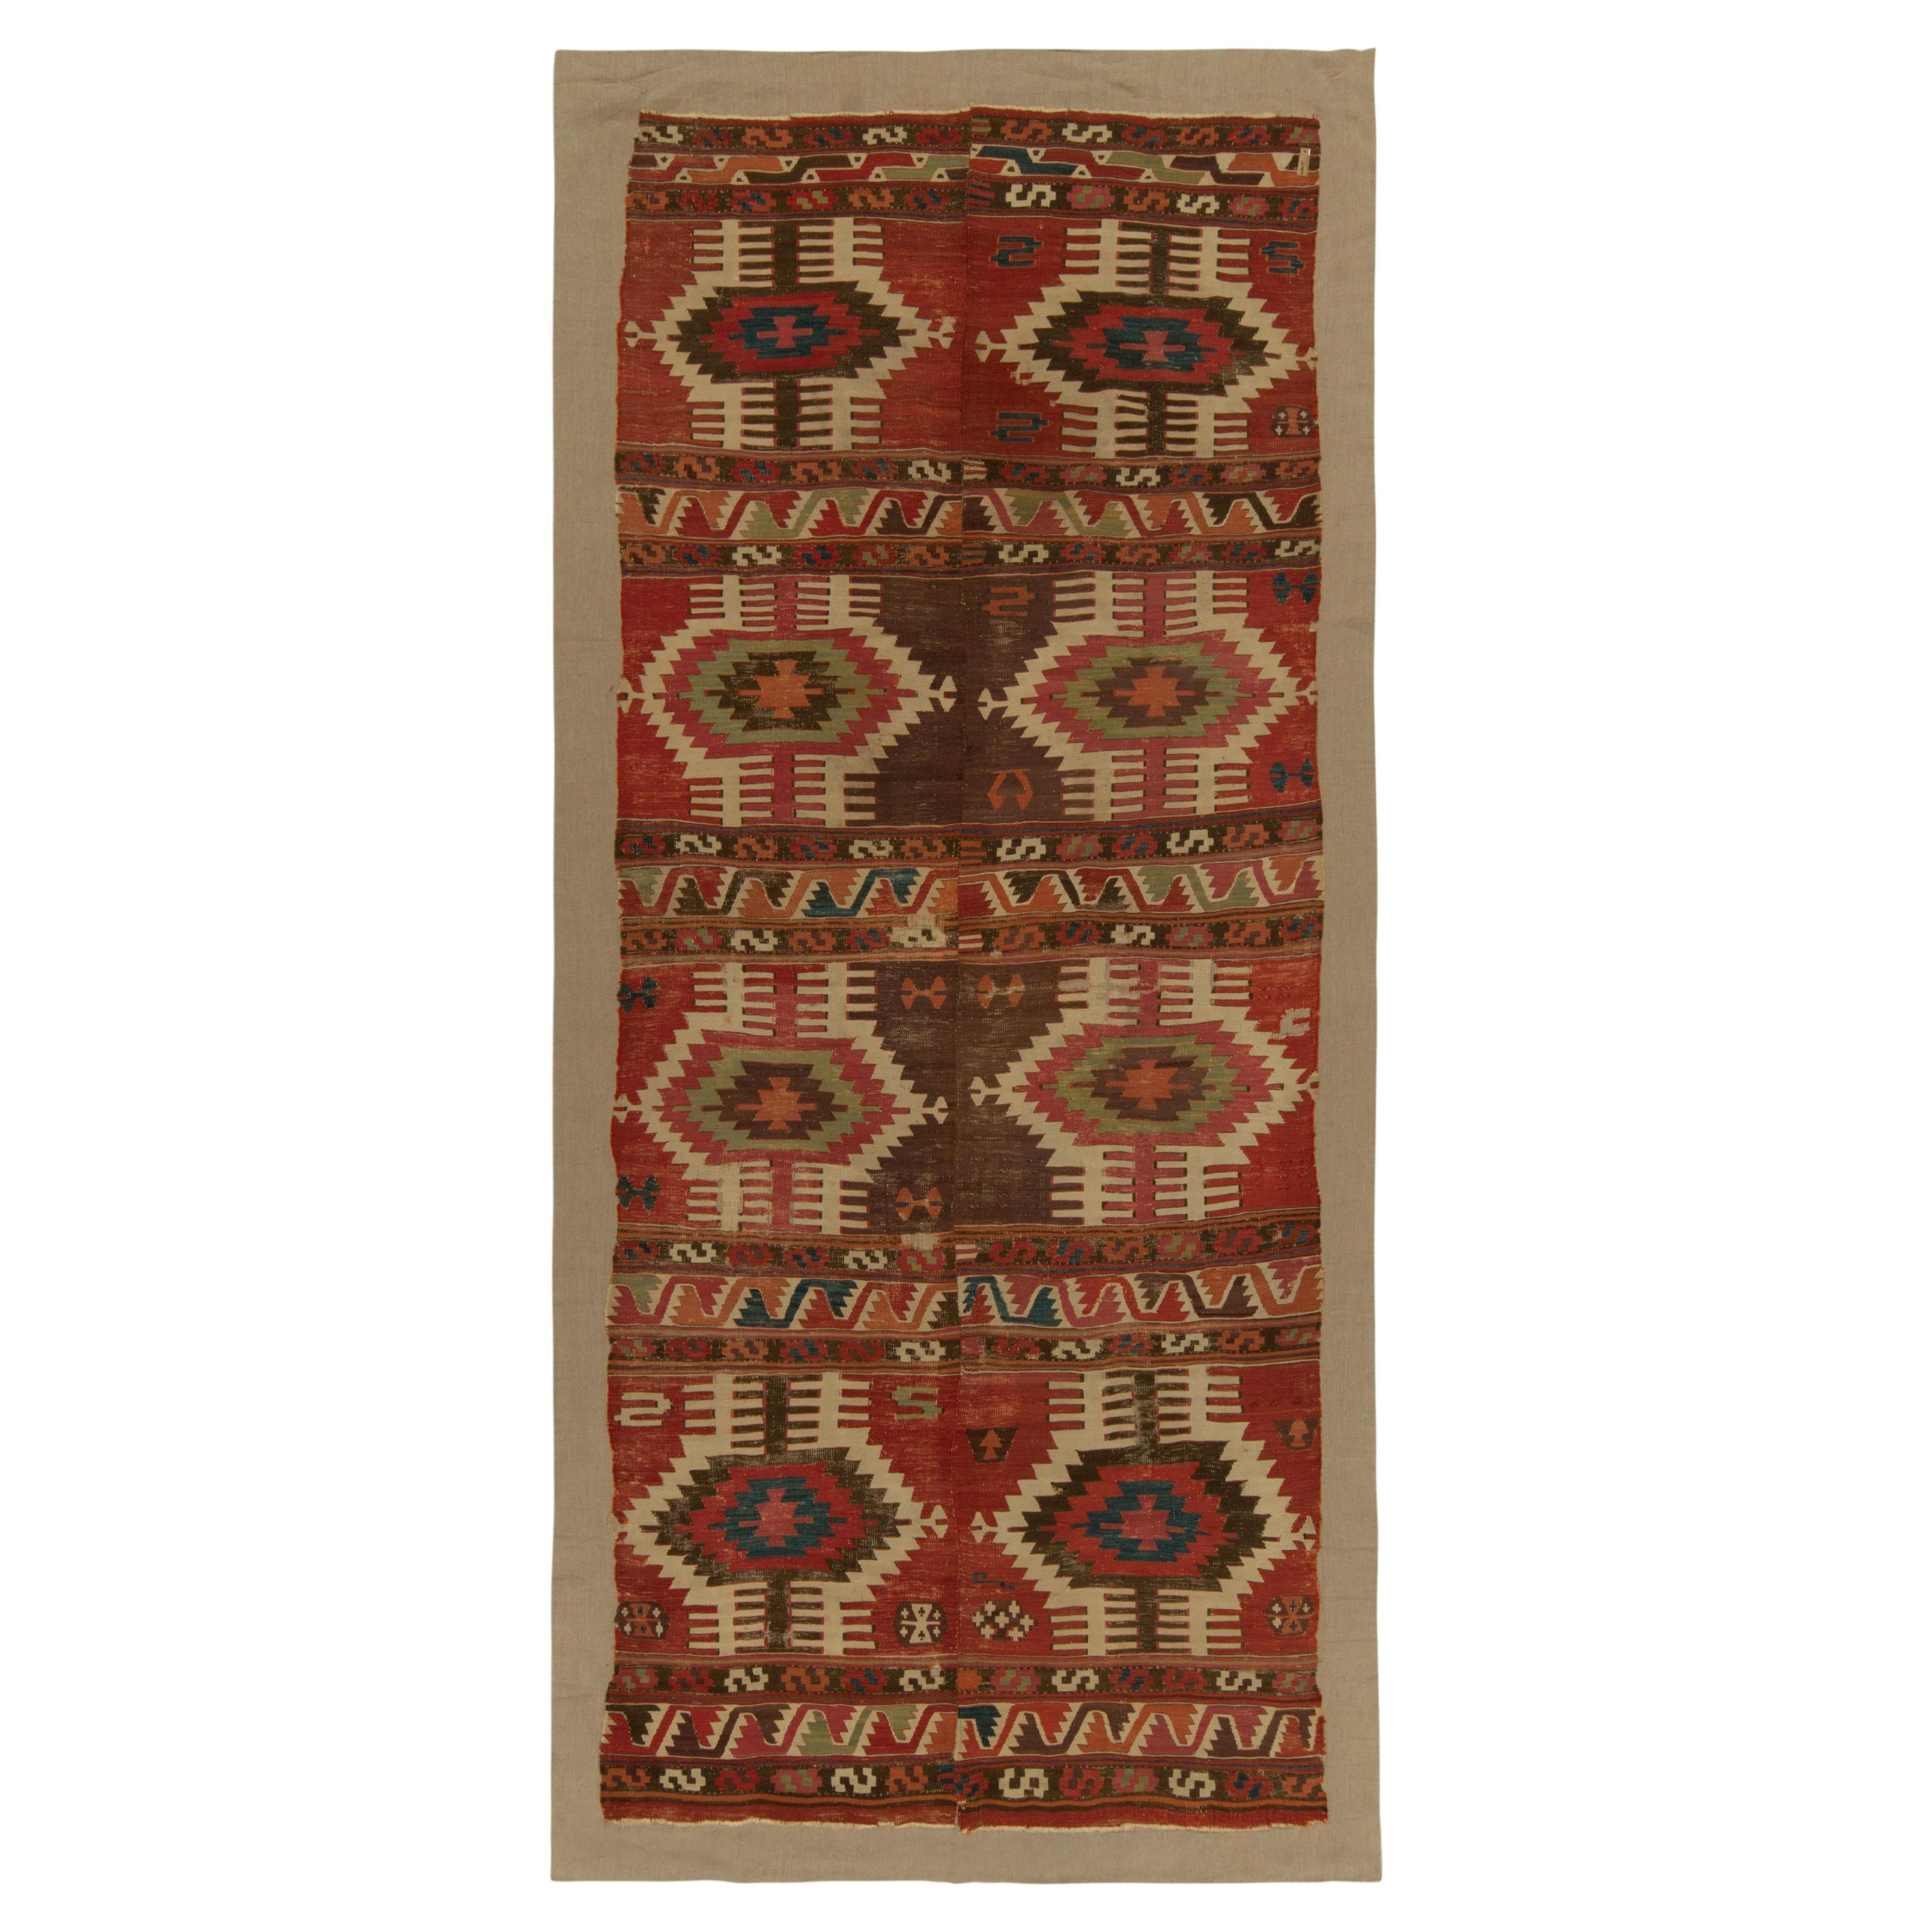 Antique Tribal Kilim rug in Red, Beige-Brown Geometric Pattern by Rug & Kilim